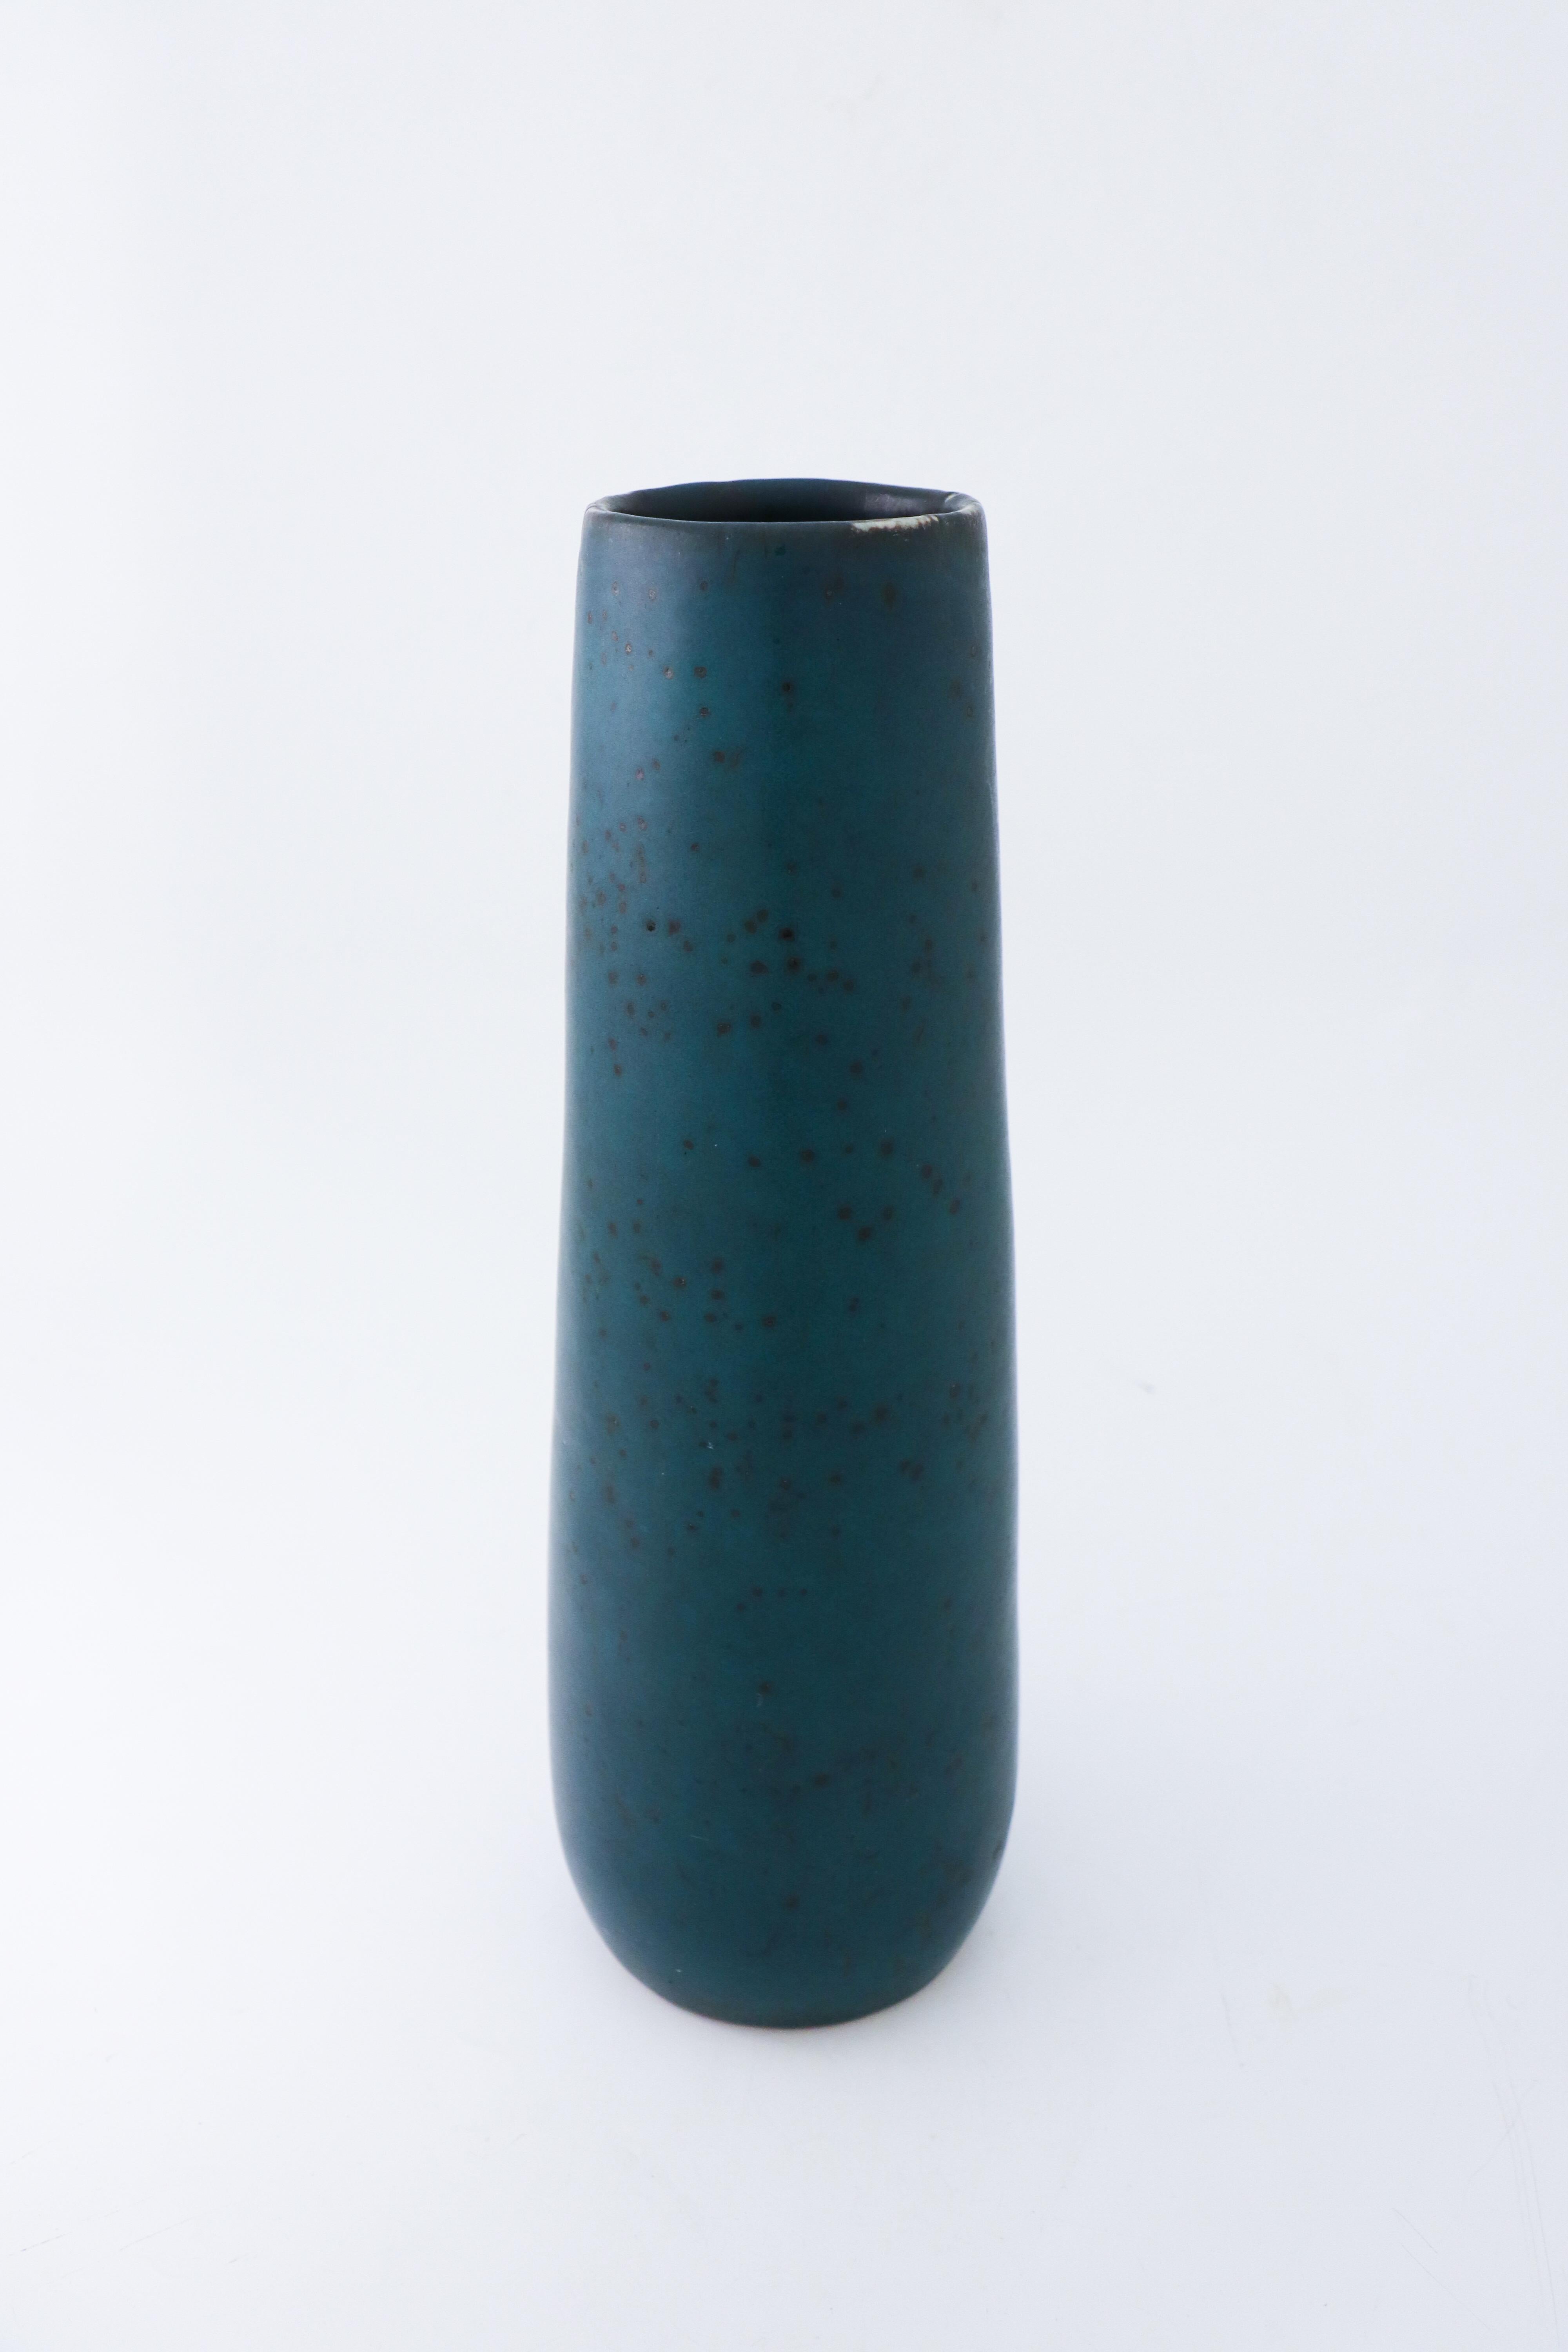 Swedish Dark Green Ceramic Vase, Carl-Harry Stålhane, Rörstrand Aterlier, 1950s For Sale